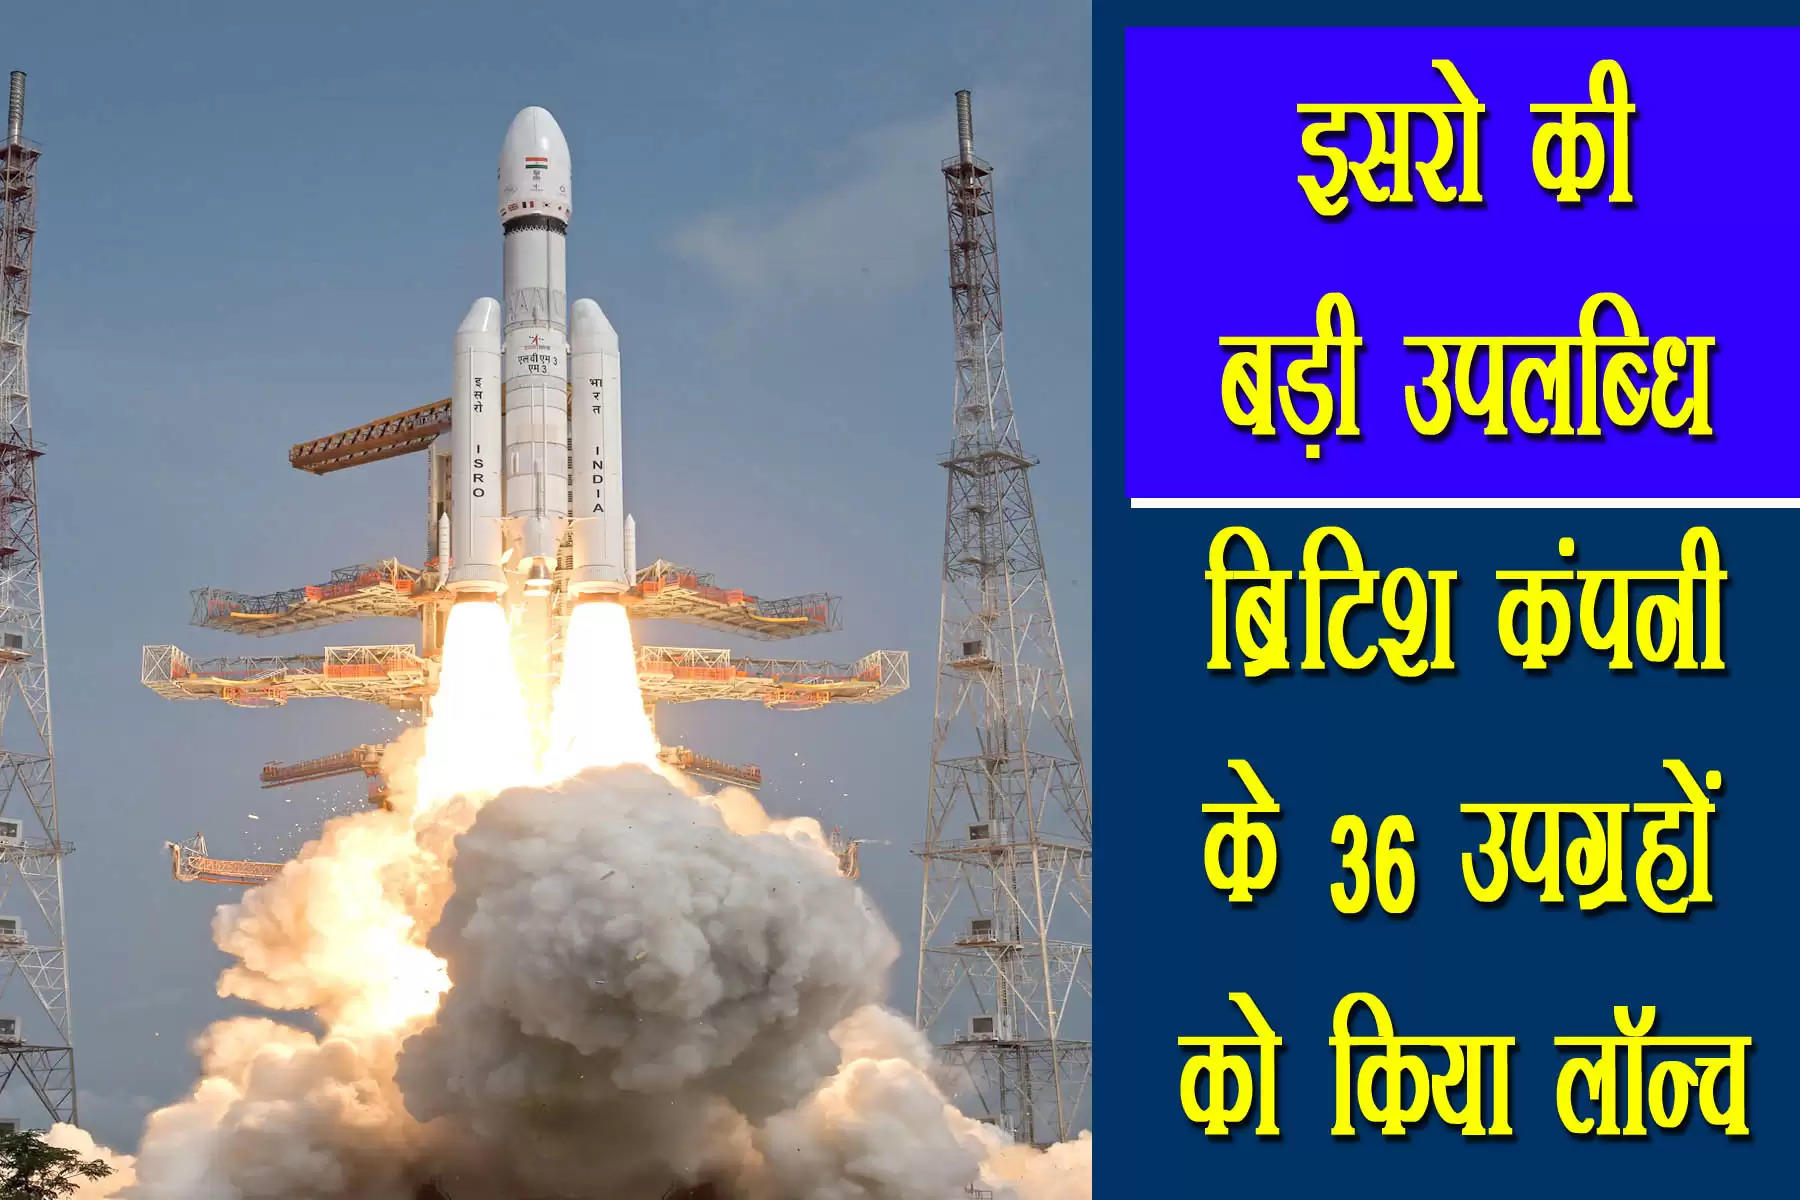 भारतीय अंतरिक्ष अनुसंधान संगठन (ISRO) रविवार यानी 26 मार्च को ब्रिटेन के 36 सैटेलाइट एक साथ लॉन्च किए। भेजे गए सभी सैटेलाइट का कुल वजन 5805 किलोग्राम है। इस मिशन को LVM3-M3/वनवेब इंडिया-2 नाम दिया गया है। इनकी लॉन्चिंग सतीश धवन अंतरिक्ष केंद्र श्रीहरिकोटा के स्पेसपोर्ट से सुबह 9.00 बजे की गई।  इसमें ISRO के 43.5 मीटर लंबे LVM3 रॉकेट (GSLV-MK III) का इस्तेमाल किया गया। ये ISRO का सबसे भारी रॉकेट है। इसने दूसरे लॉन्चपैड से उड़ान भरी। इस लॉन्च पैड से चंद्रयान-2 मिशन समेत पांच सफल लॉन्चिंग हो चुकी हैं। LVM3 से चंद्रयान-2 मिशन समेत लगातार पांच सफल मिशन लॉन्च किए जा चुके हैं। यह इसकी छठी सफल उड़ान है।